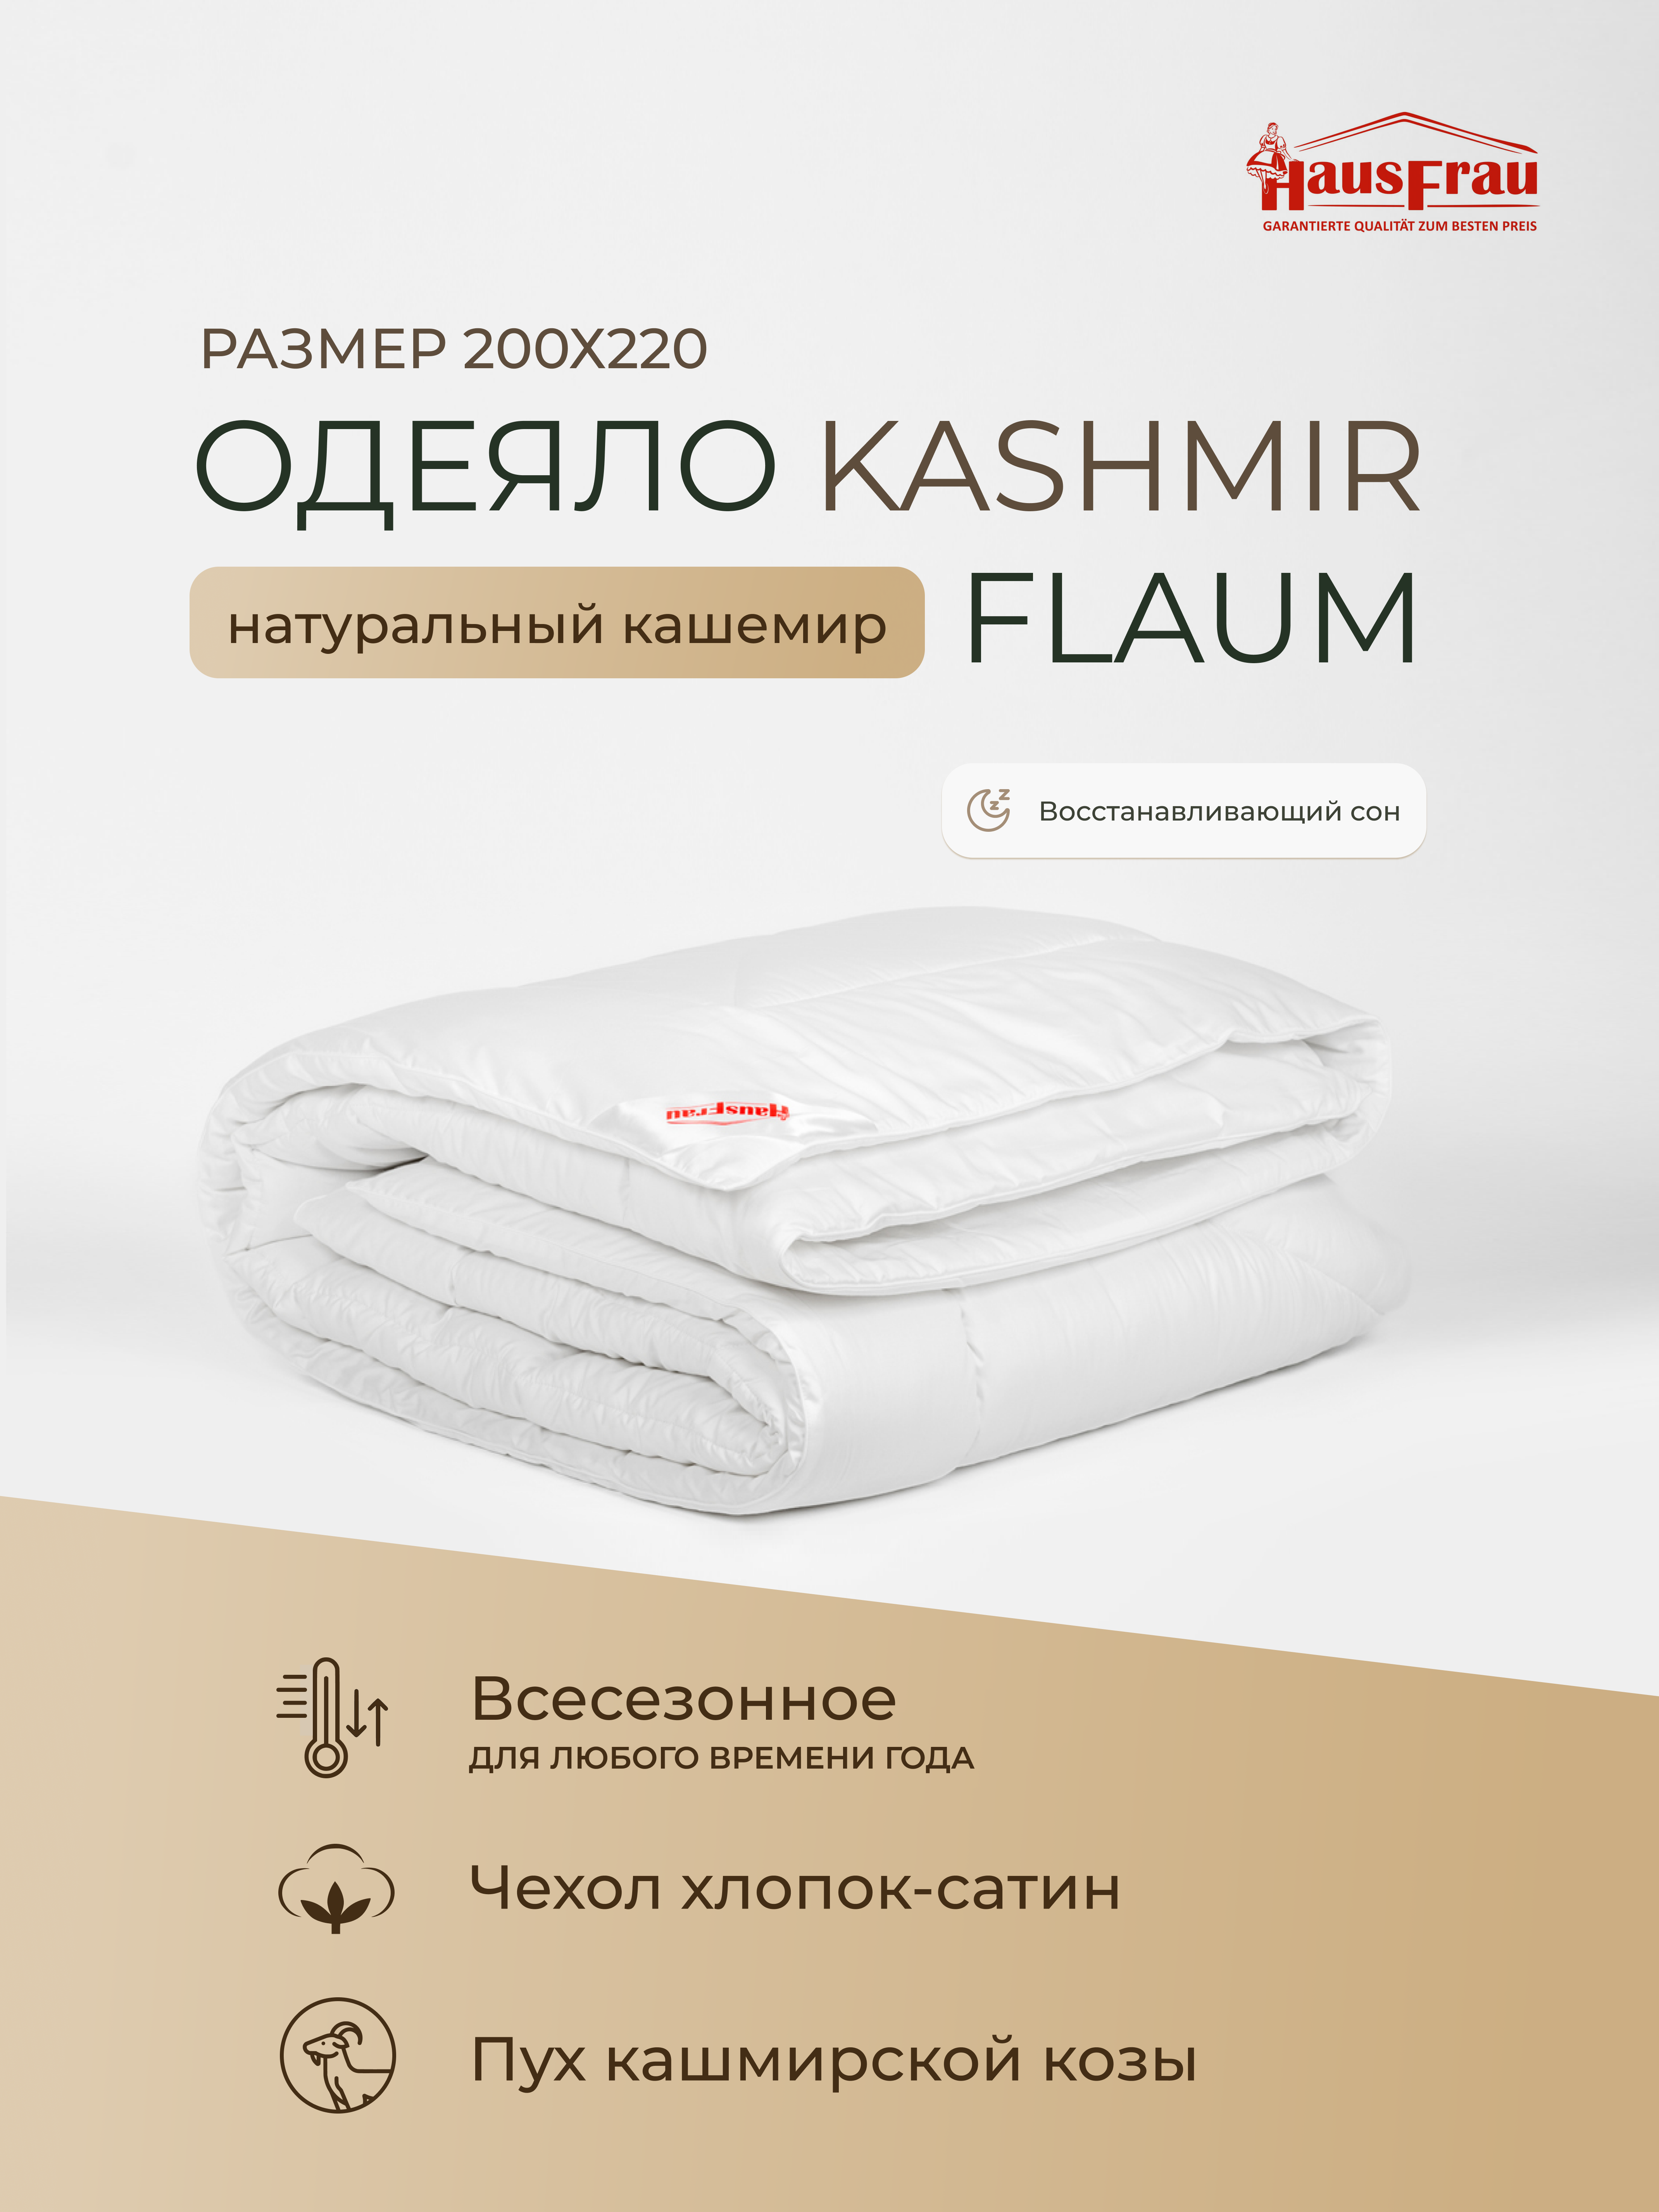 Одеяло HausFrau Kashmir Flaum всесезонное кашемир 200х220